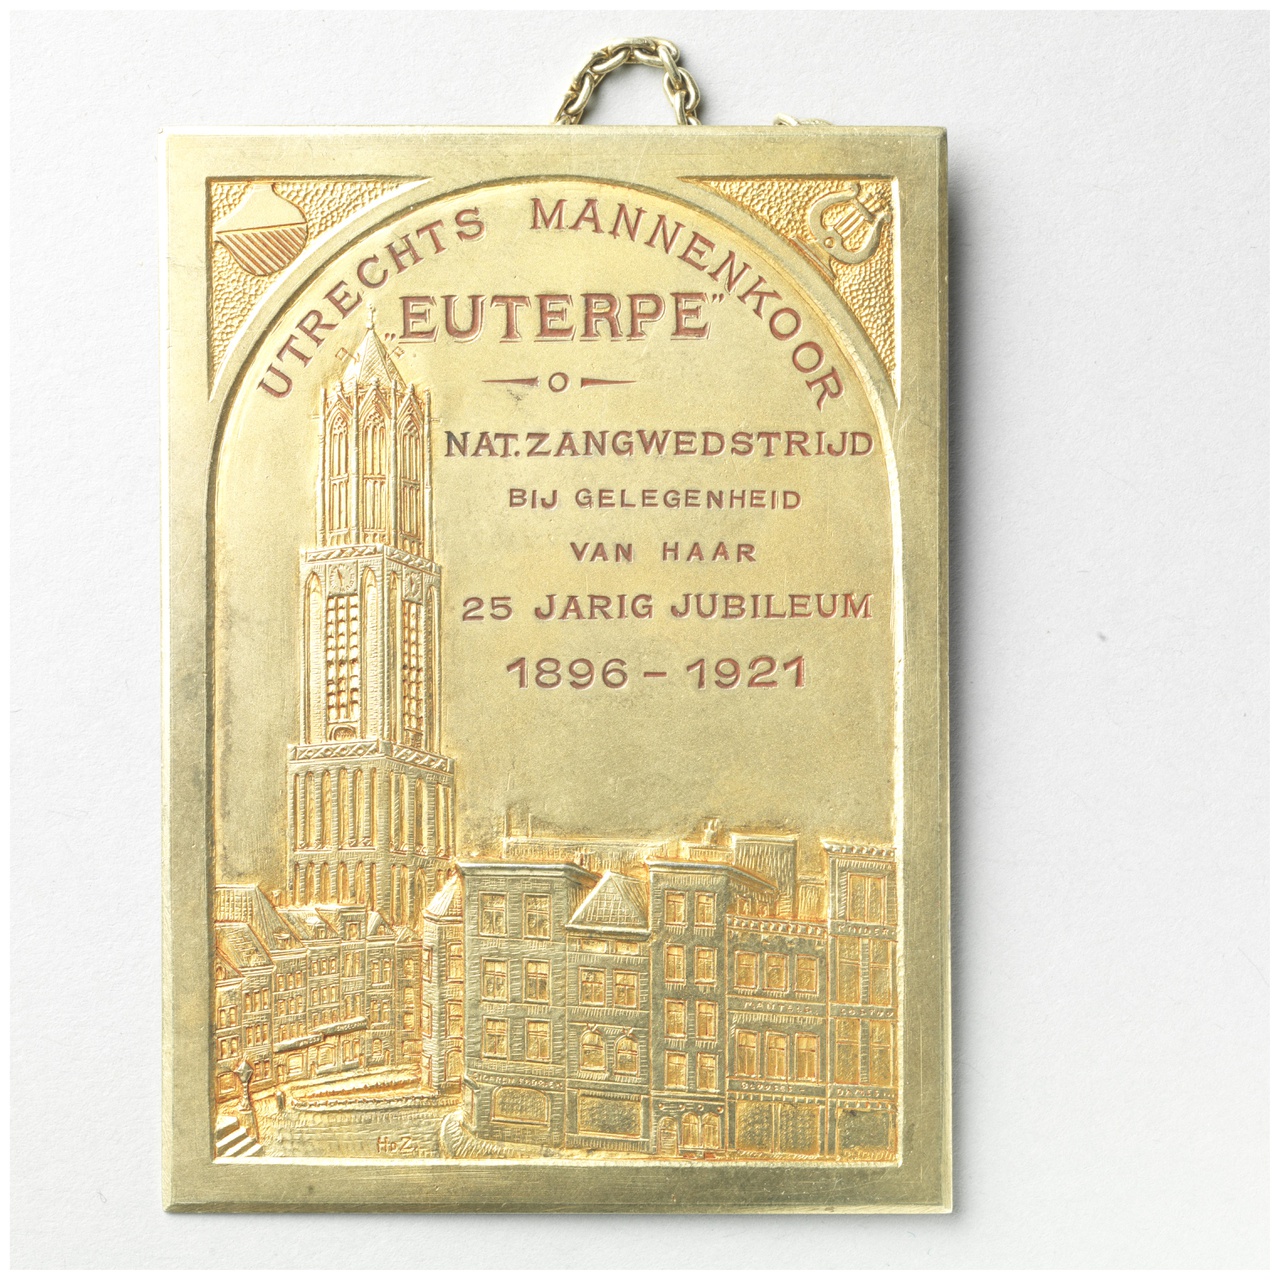 Gedenkplaquette nationale zangwedstrijd ter gelegenheid van het vijfentwintigjarig jubileum van eht Utrechtsch Mannenkoor 'Euterpe'